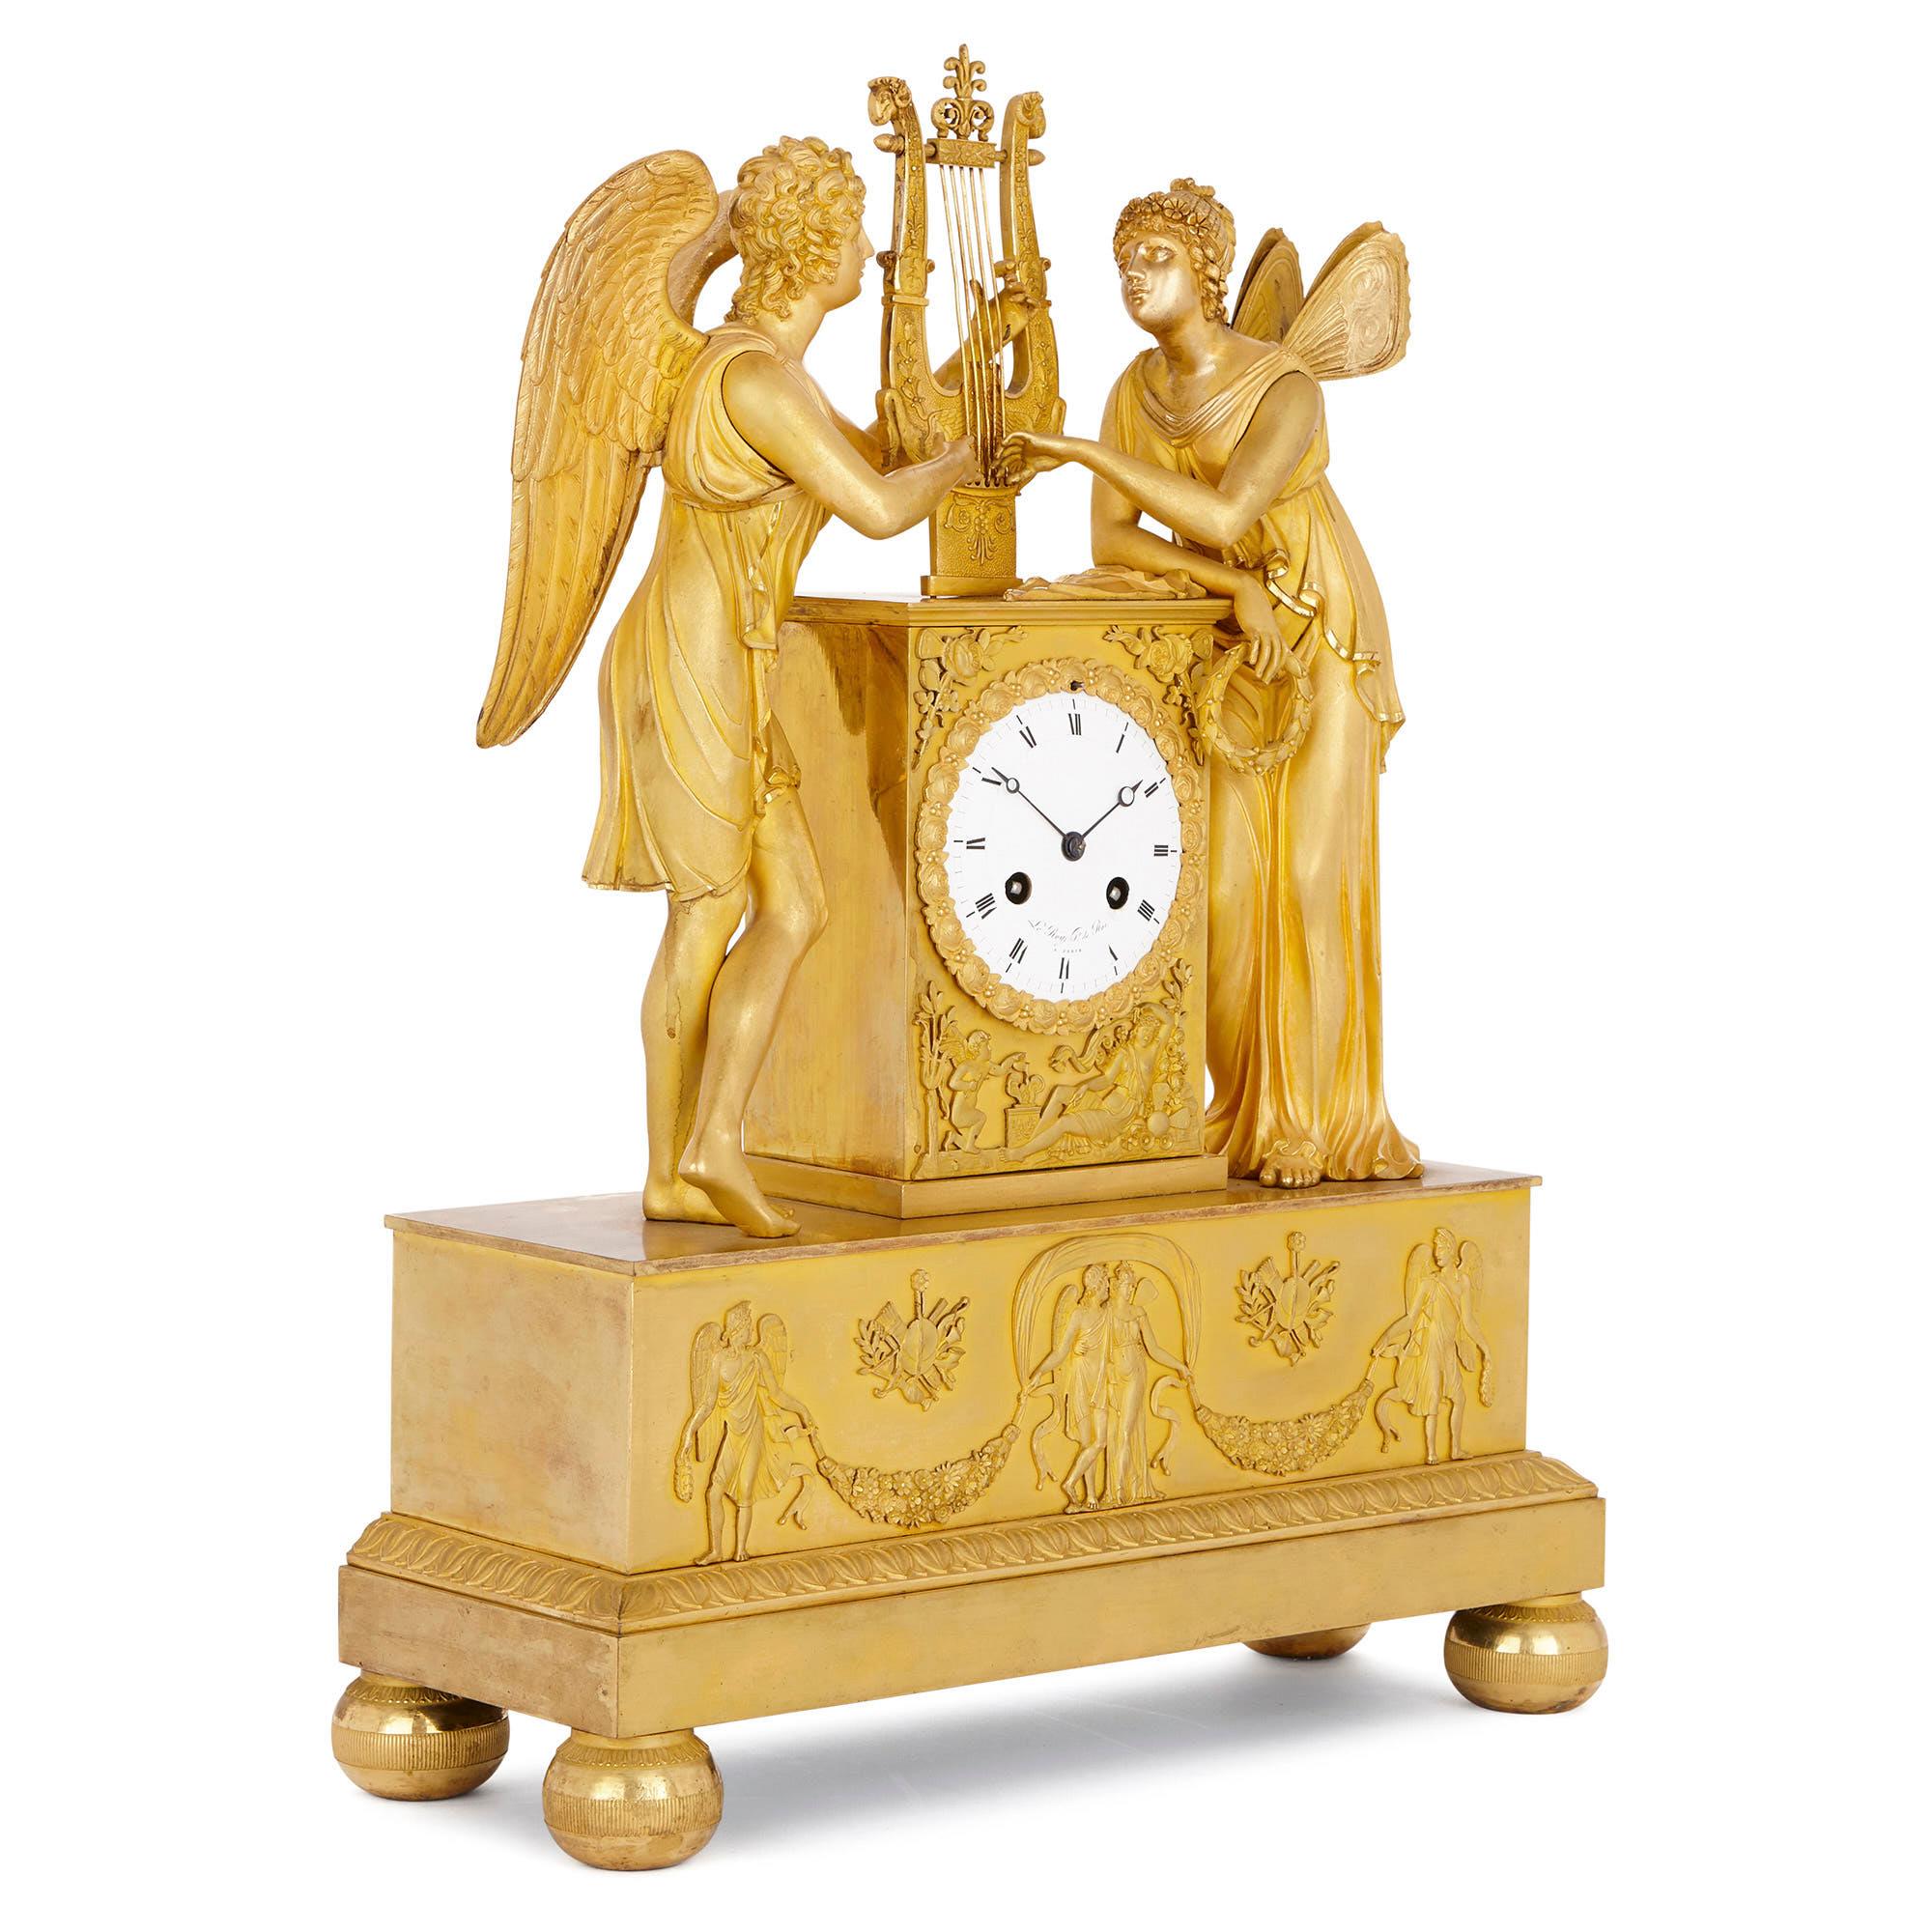 Cette belle horloge de cheminée a été fabriquée vers 1810 par la célèbre maison d'horlogerie parisienne Le Roy et fils. La société a été fondée par Basile Charles Le Roy en 1785, qui l'a ensuite transmise à son fils, Charles-Louis Le Roy. Le cabinet